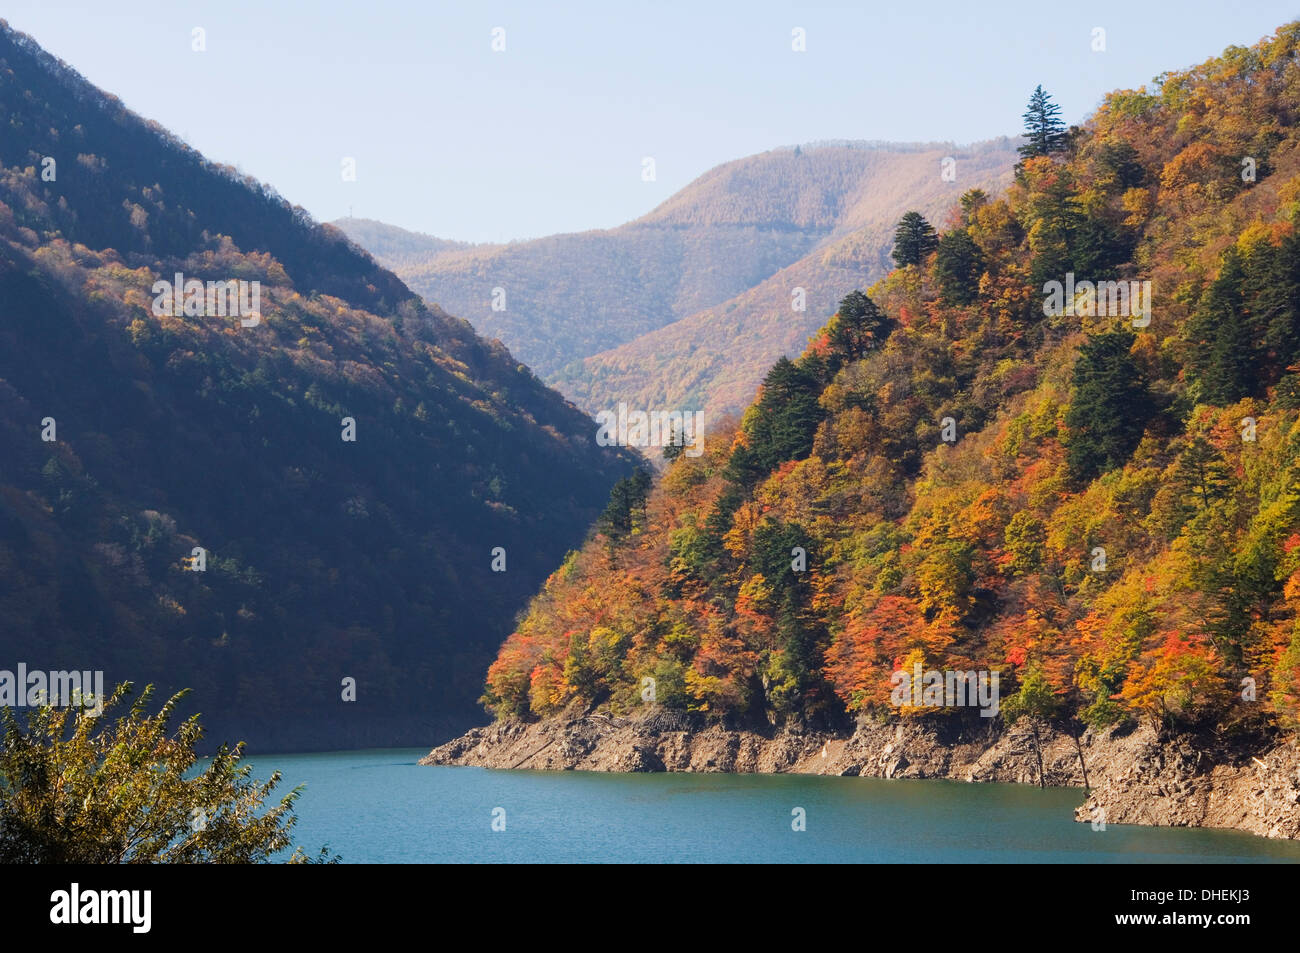 Entouré par les montagnes du réservoir avec les arbres aux couleurs de l'automne, dans la préfecture de Nagano, l'île de Honshu, Japon, Asie Banque D'Images